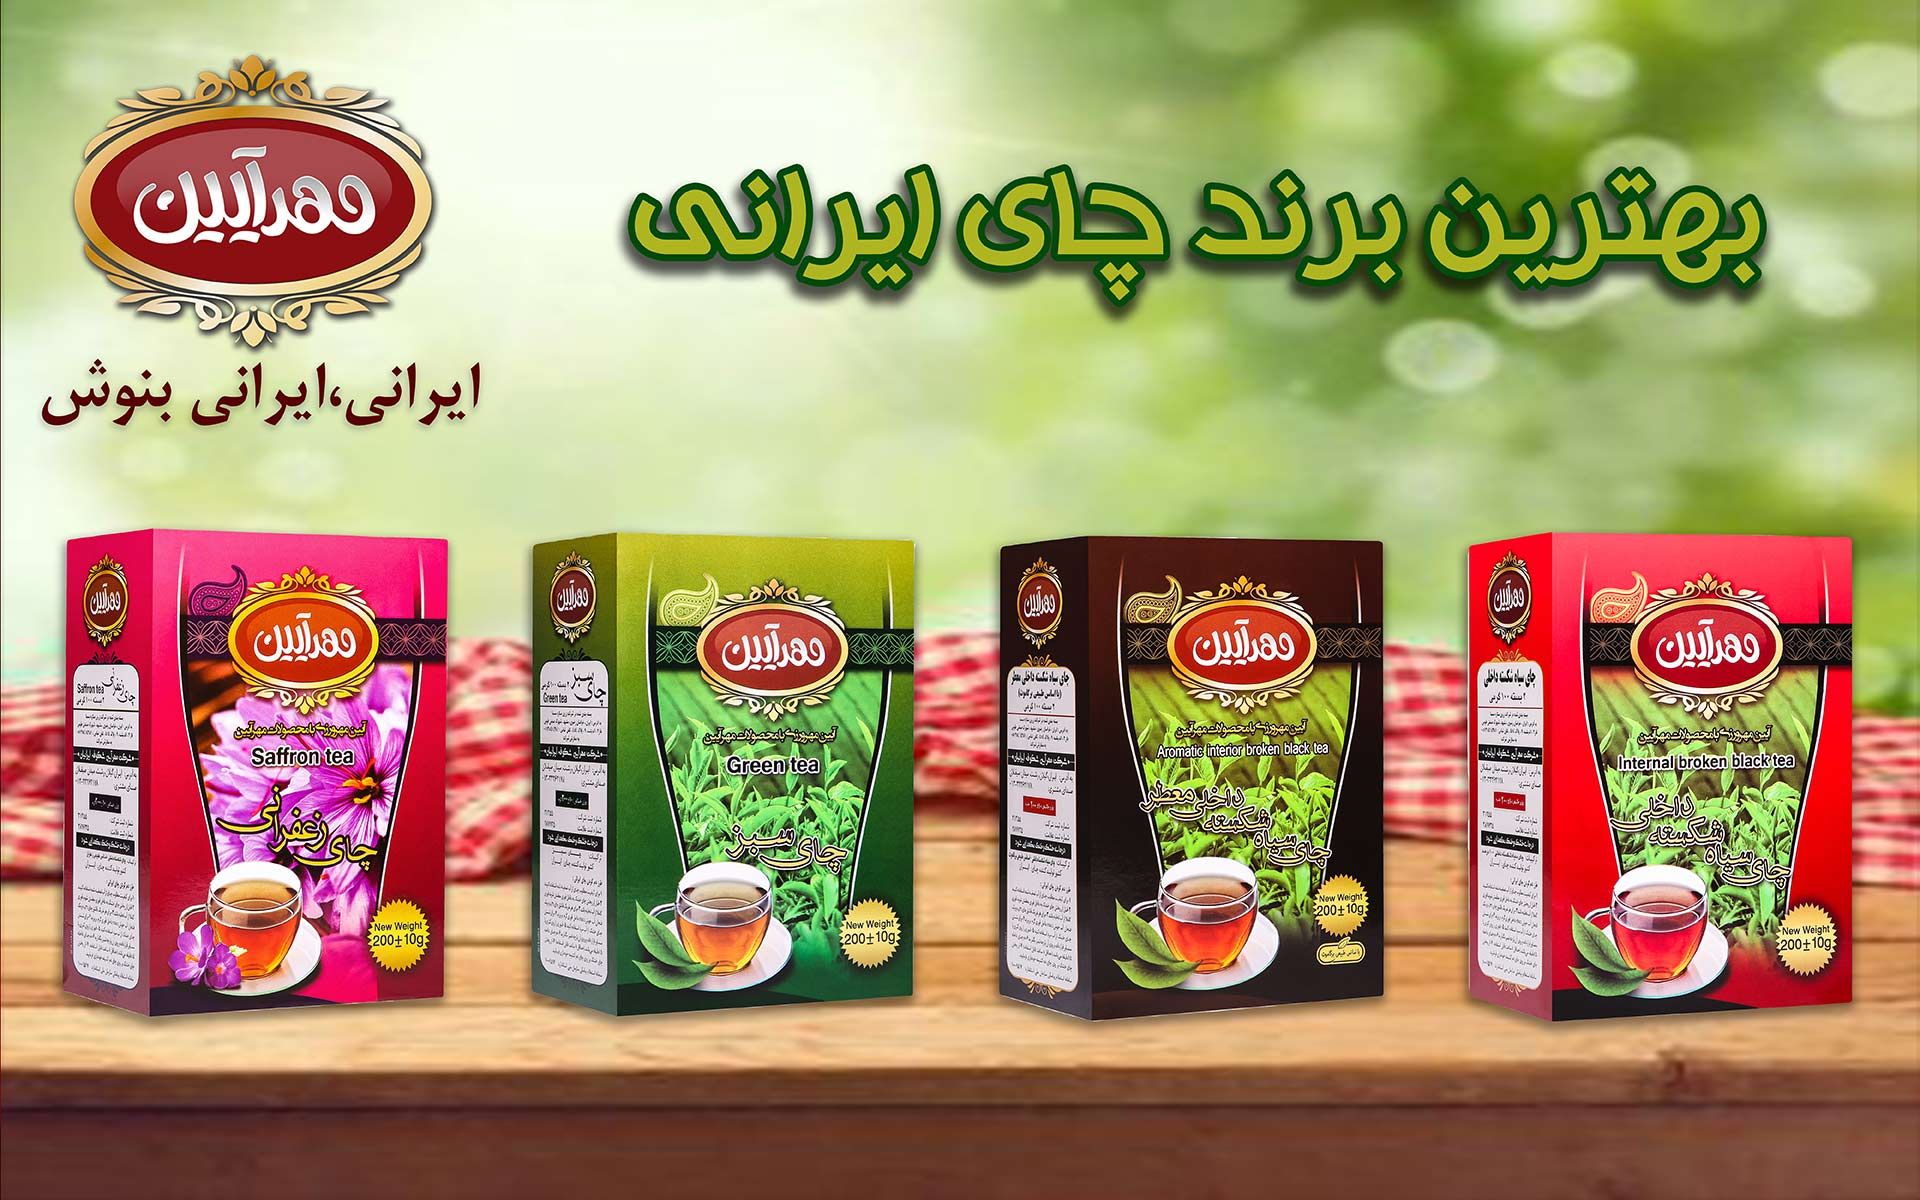 بهترین برند چای ایرانی ، بهترین مارک چای ایرانی ، بهترین برند زعفران، بهترین مارک زعفران ، محصولات مهرآیین 